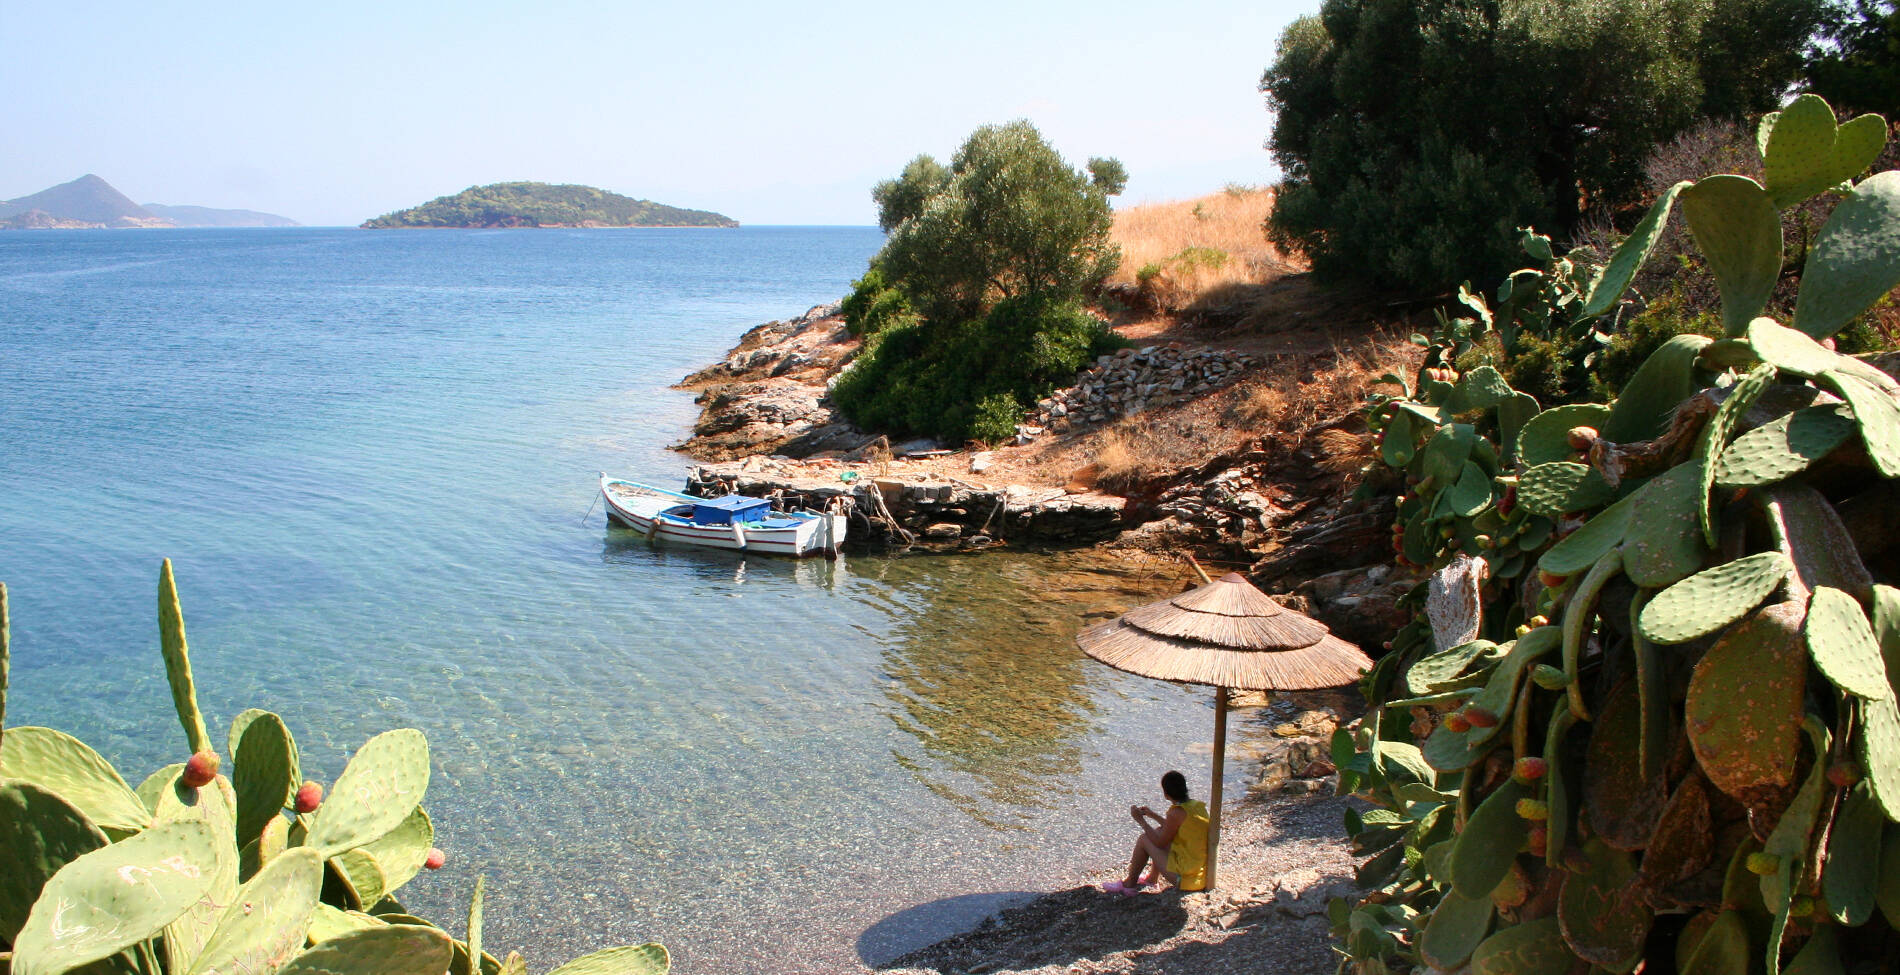 Μικροσκοπικά ελληνικά νησιά που χαρίζουν συγκινήσεις έξω από τα καθιερωμένα